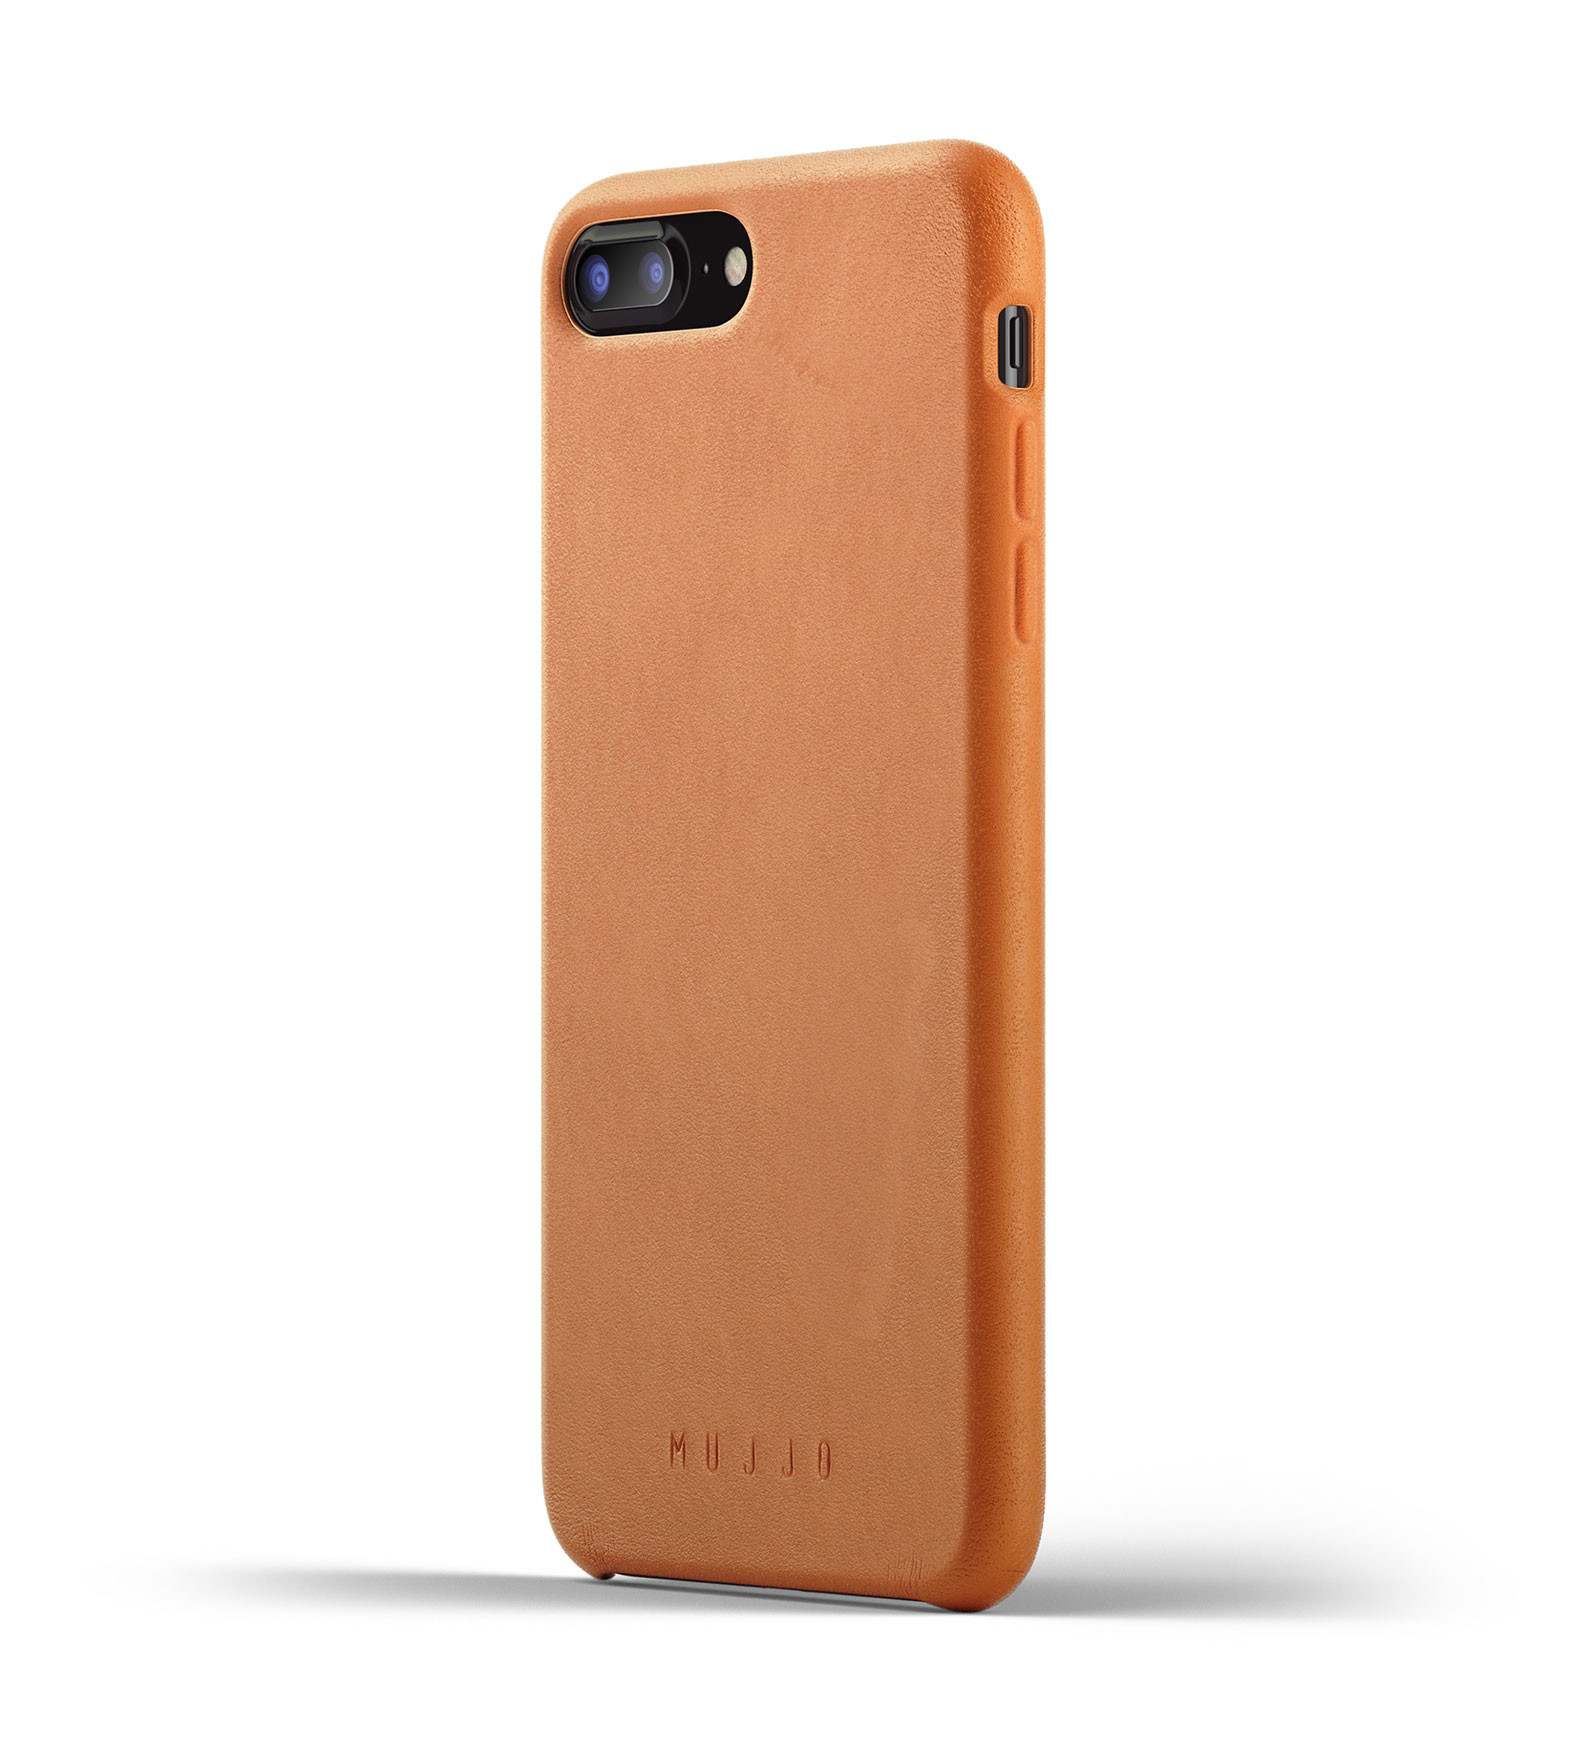 door elkaar haspelen Gelijk Halve cirkel Mujjo Leather Case for iPhone 7 / 8 Plus bruin